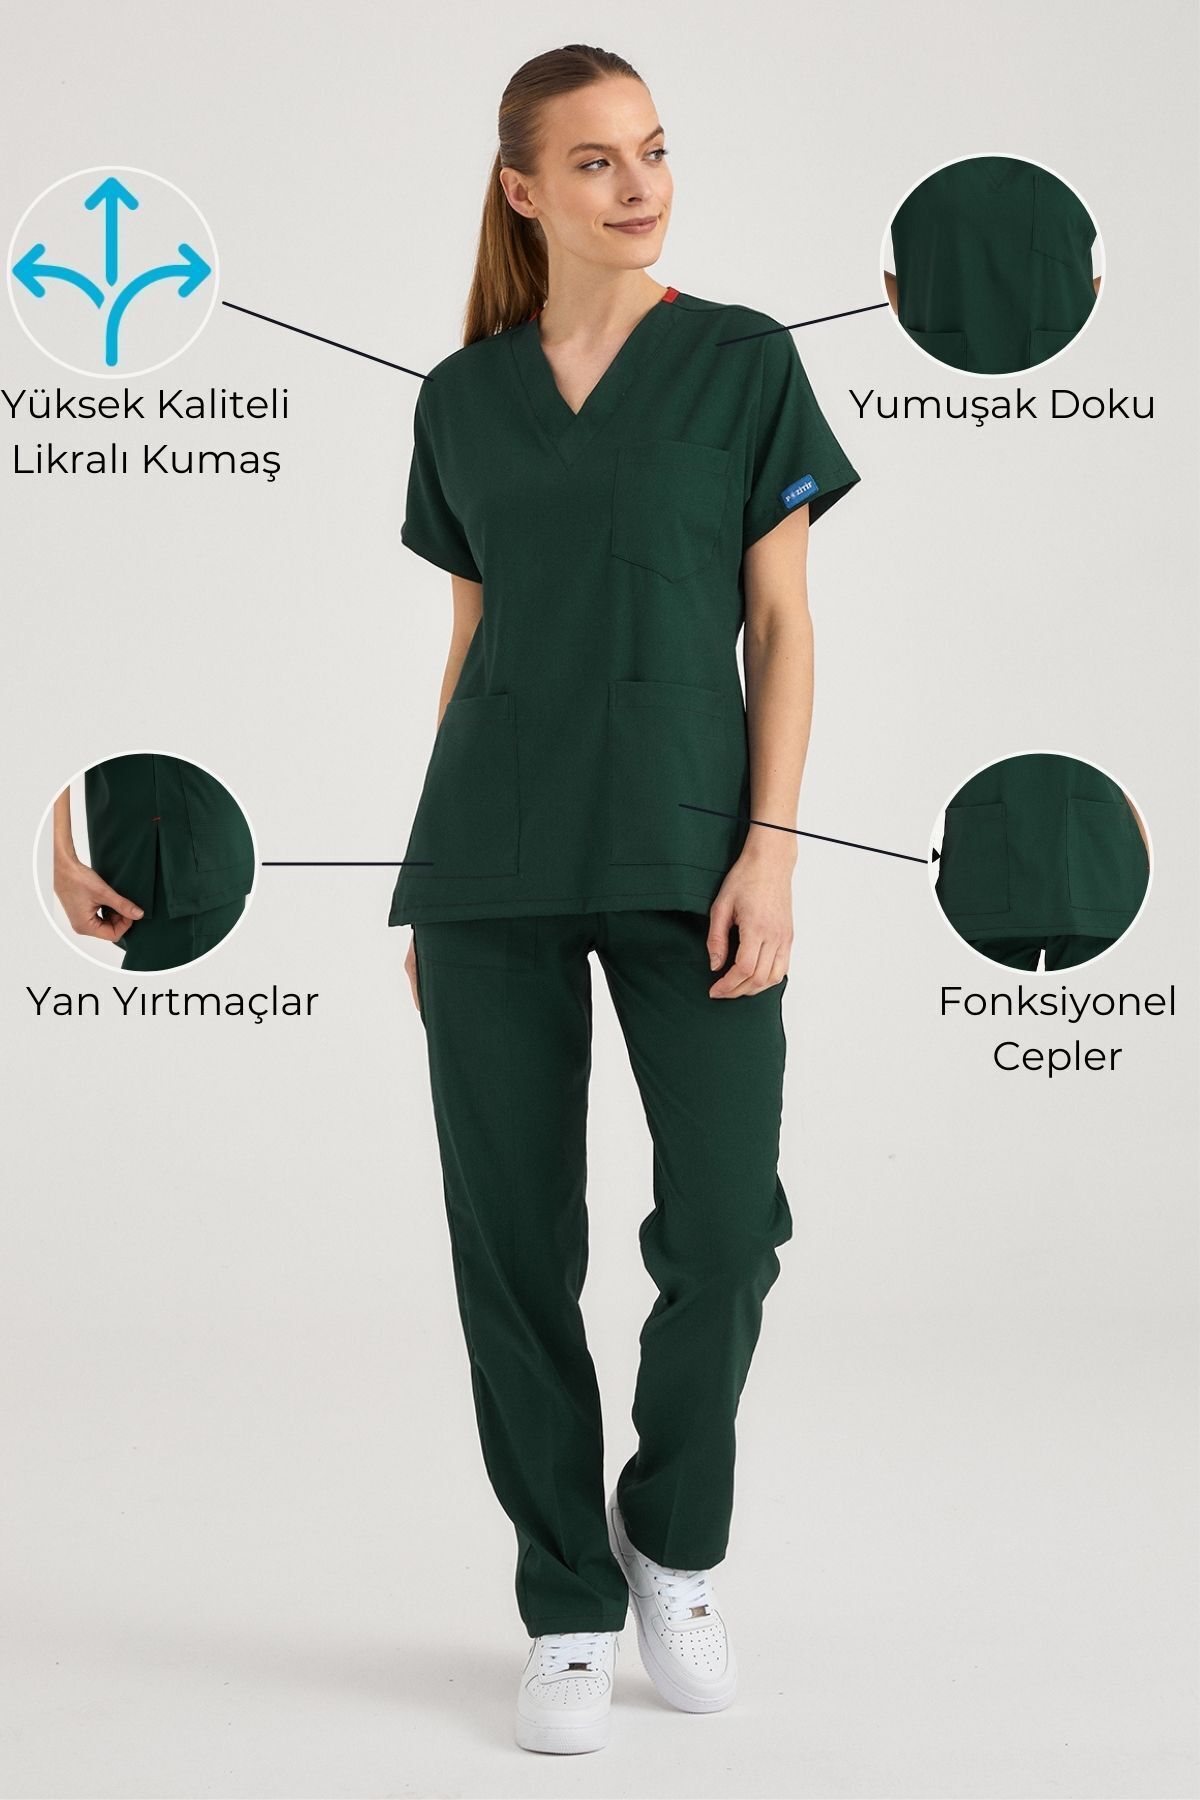 Pozitif Üniforma Avcı Yeşili Likralı Hemşire Forması Alt Üst Cerrahi Takım Scrubs Üniforma Cerrahi Forma